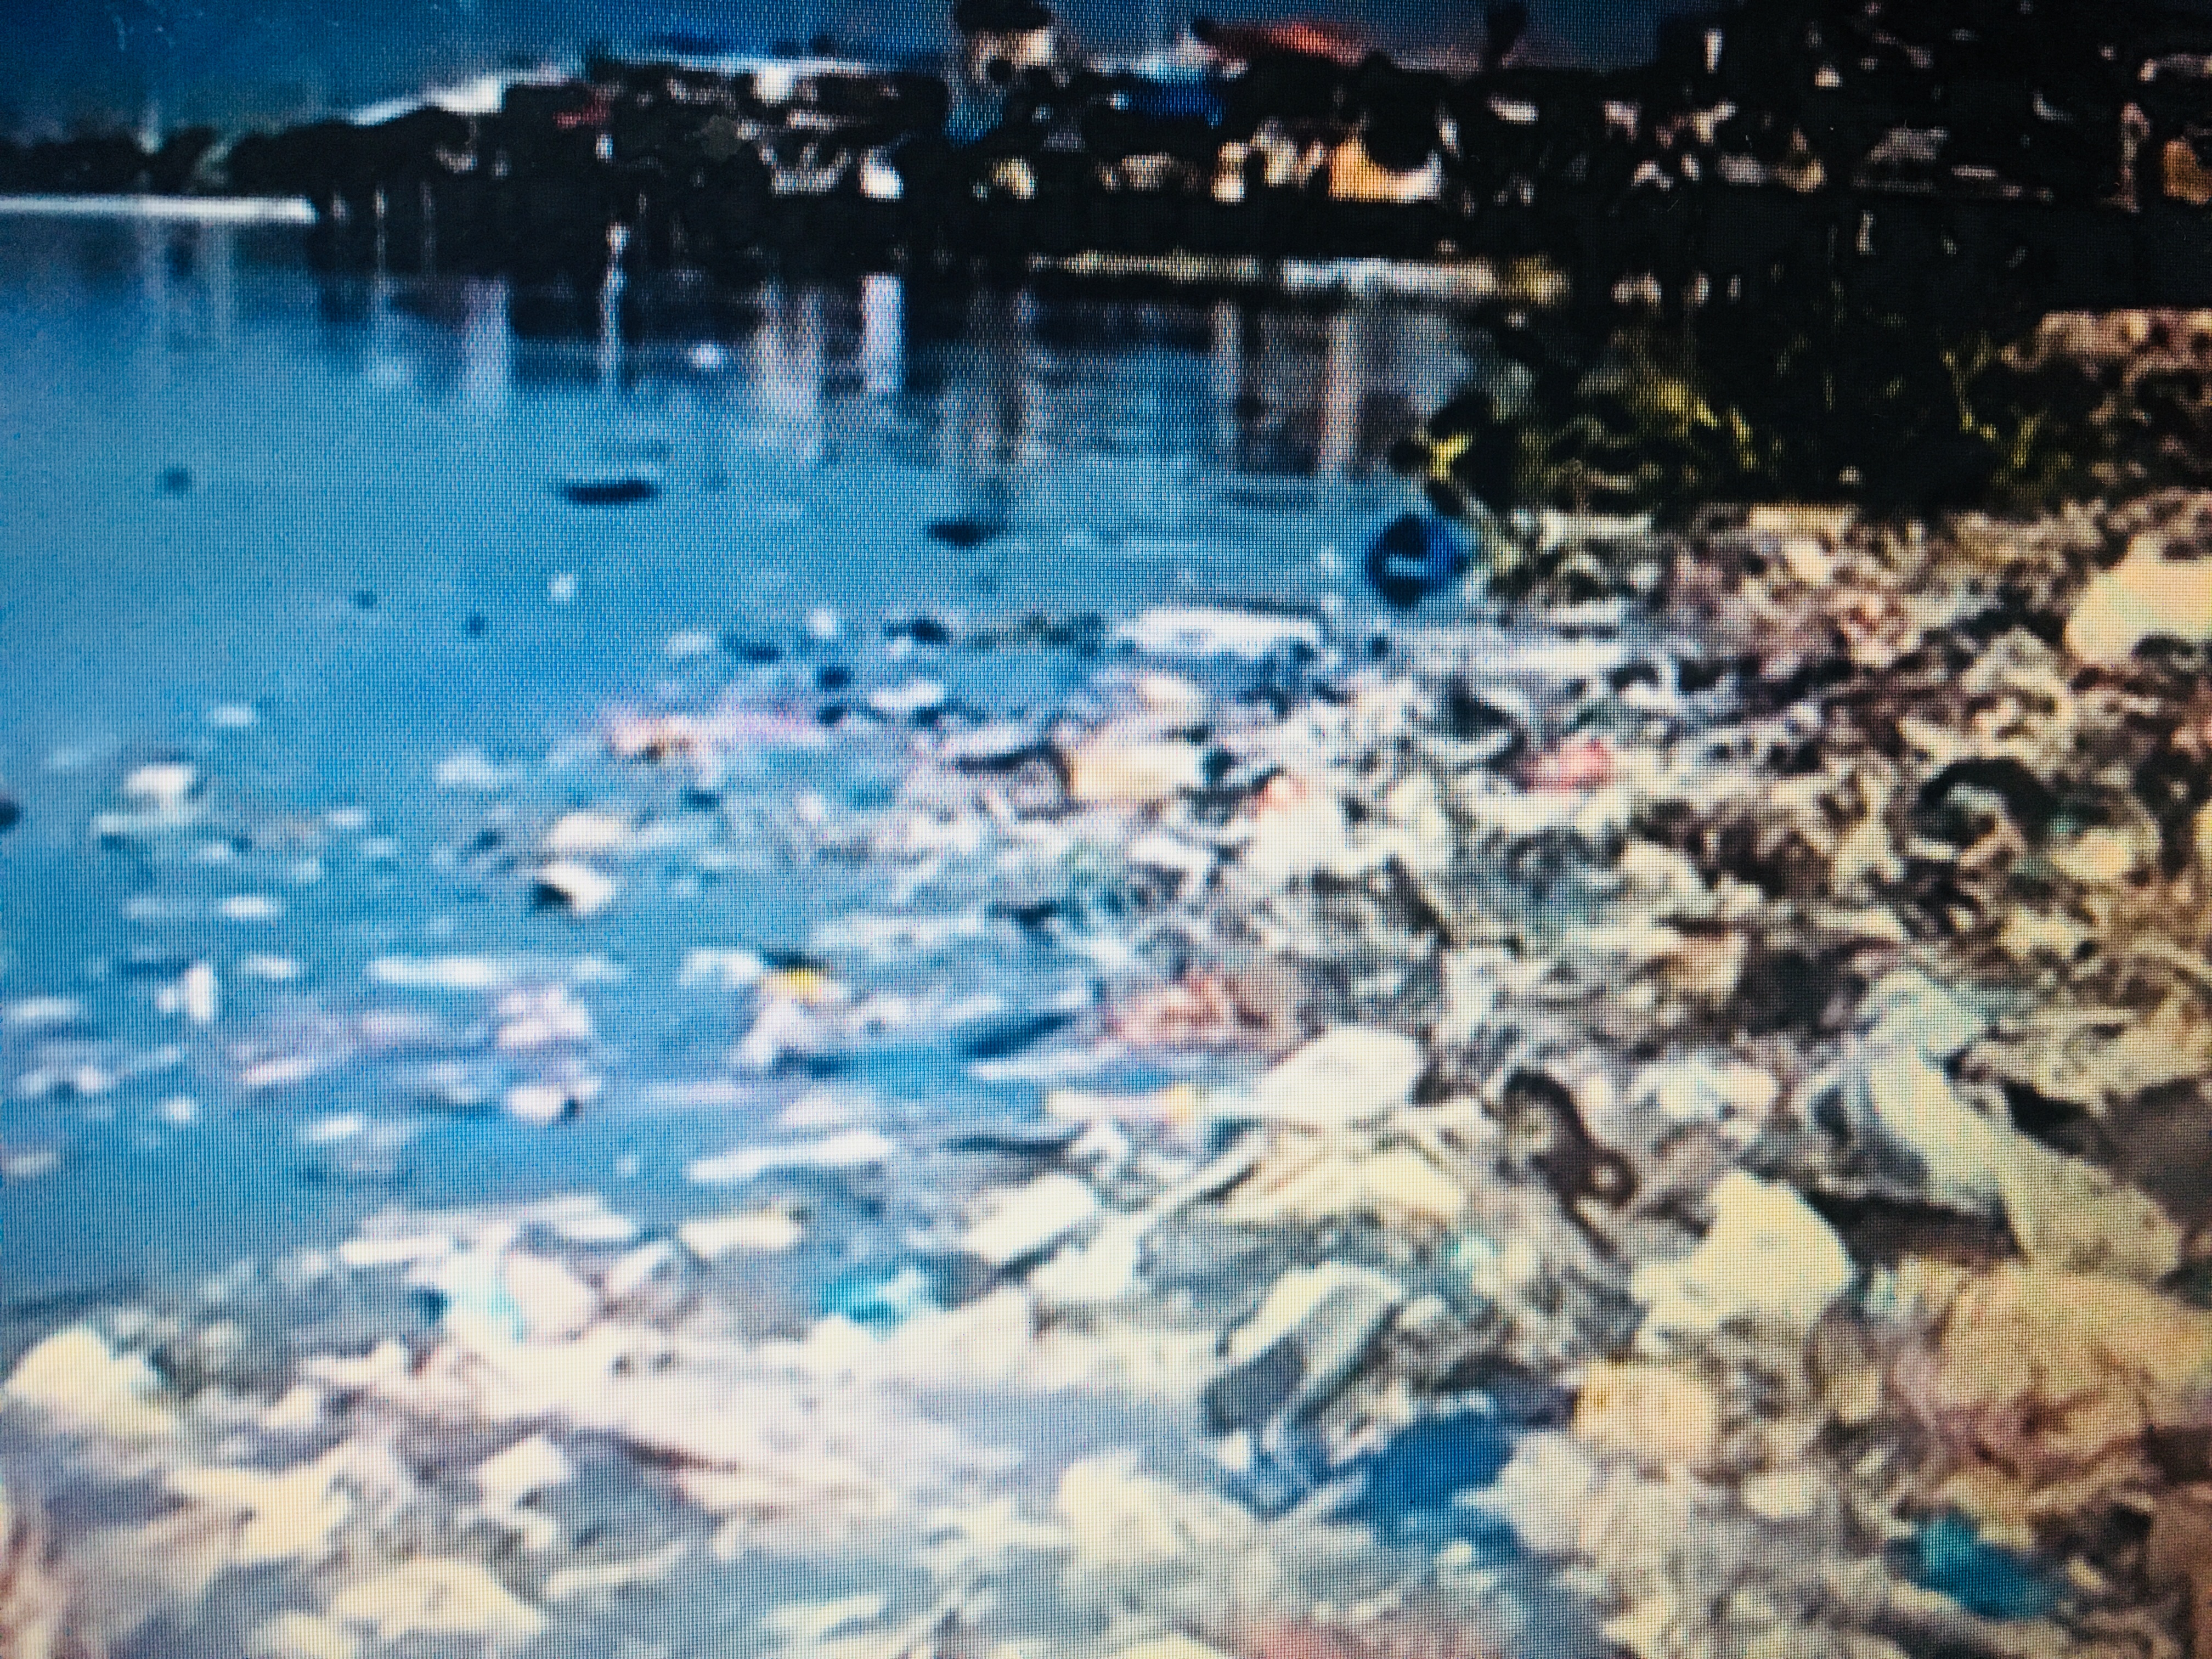 ONU poluição nos rios e mares